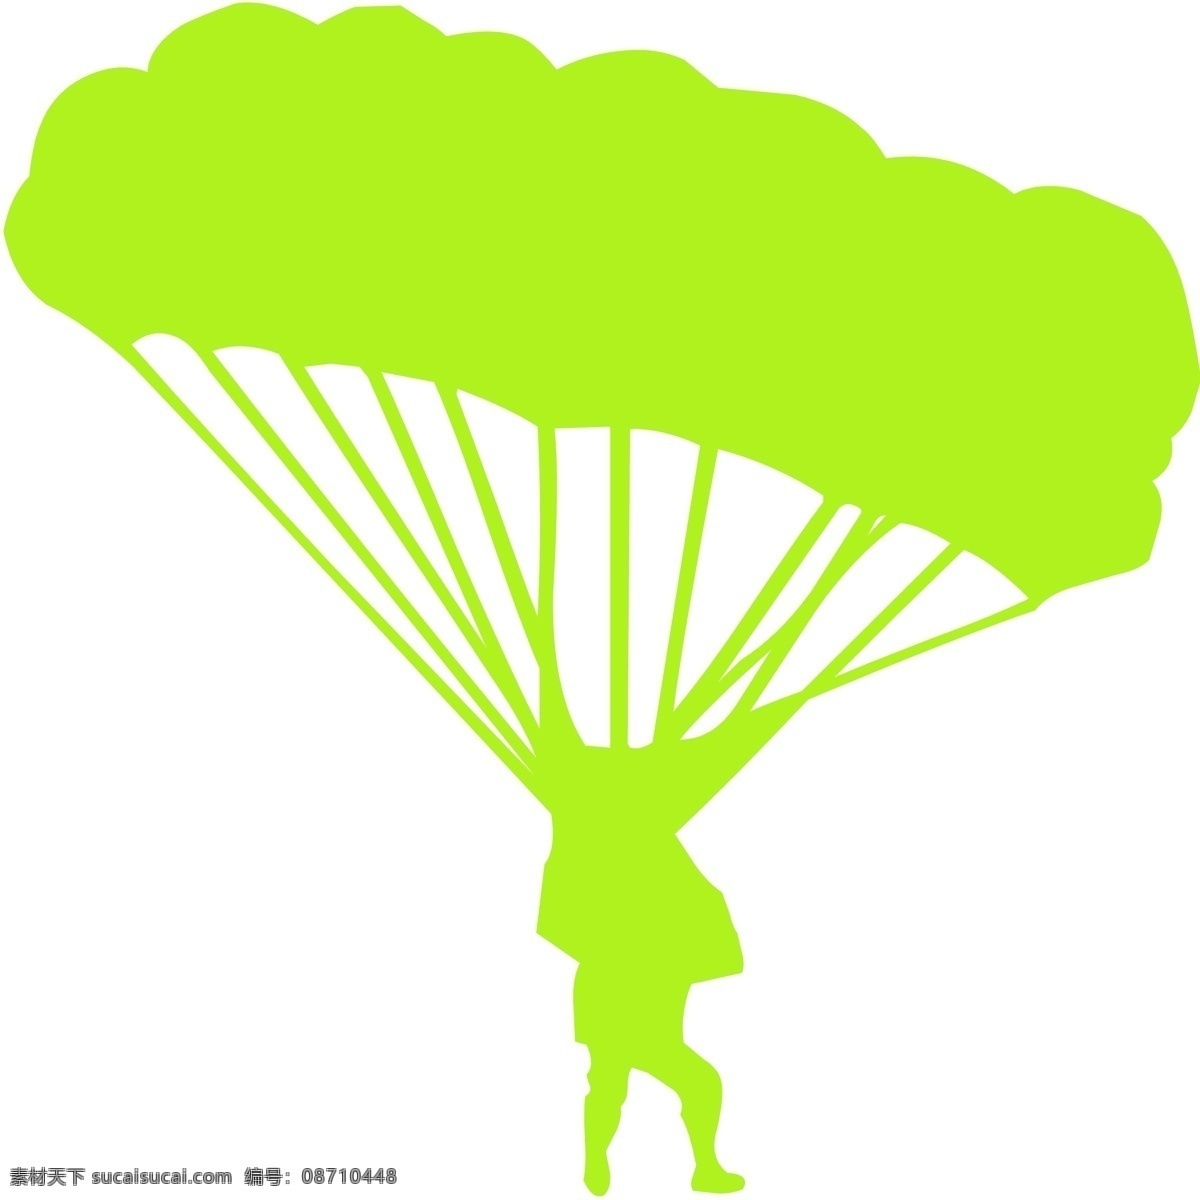 跳伞 人物 矢量 安全 飞行 高清图片 极限运动 健身 矢量素材 体育 运动 跳伞人物 文化艺术